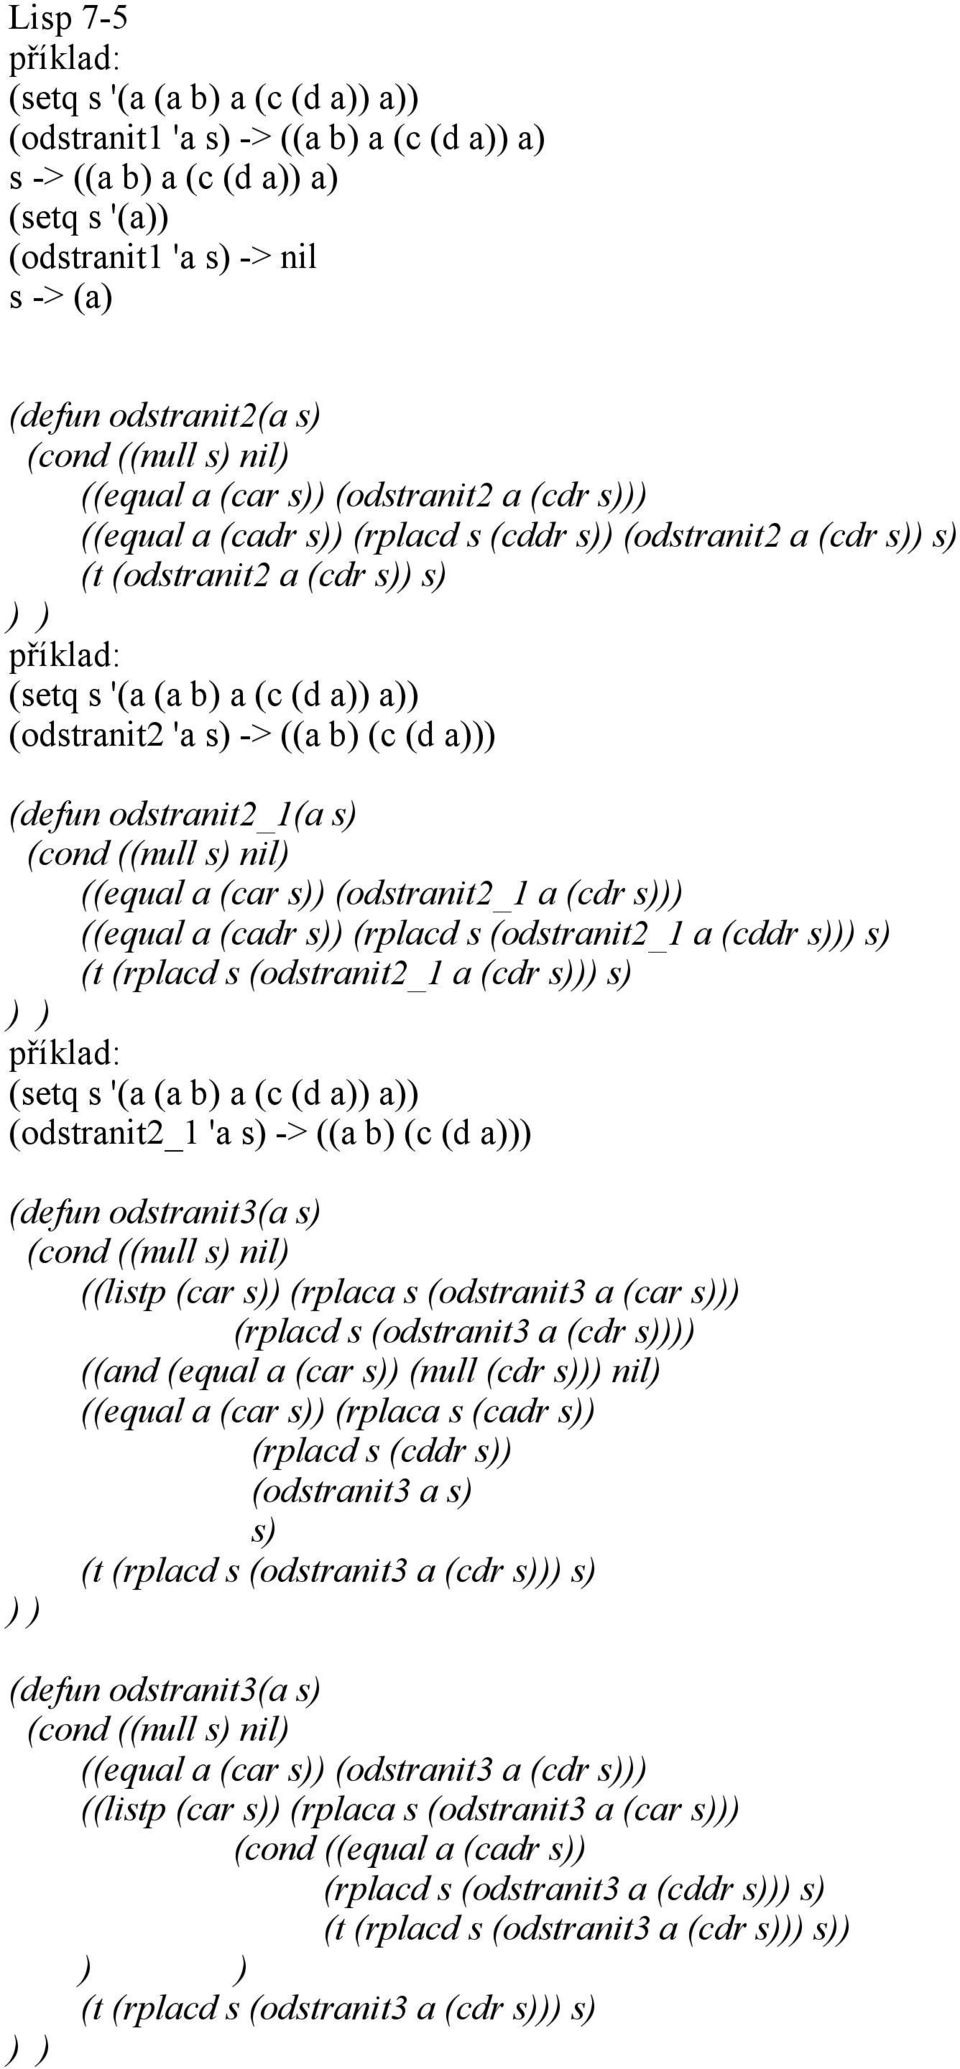 (odstranit2_1 a (cdr s ((equal a (cadr s (rplacd s (odstranit2_1 a (cddr s s (t (rplacd s (odstranit2_1 a (cdr s s (setq s '(a (a b a (c (d a a (odstranit2_1 'a s -> ((a b (c (d a (defun odstranit3(a